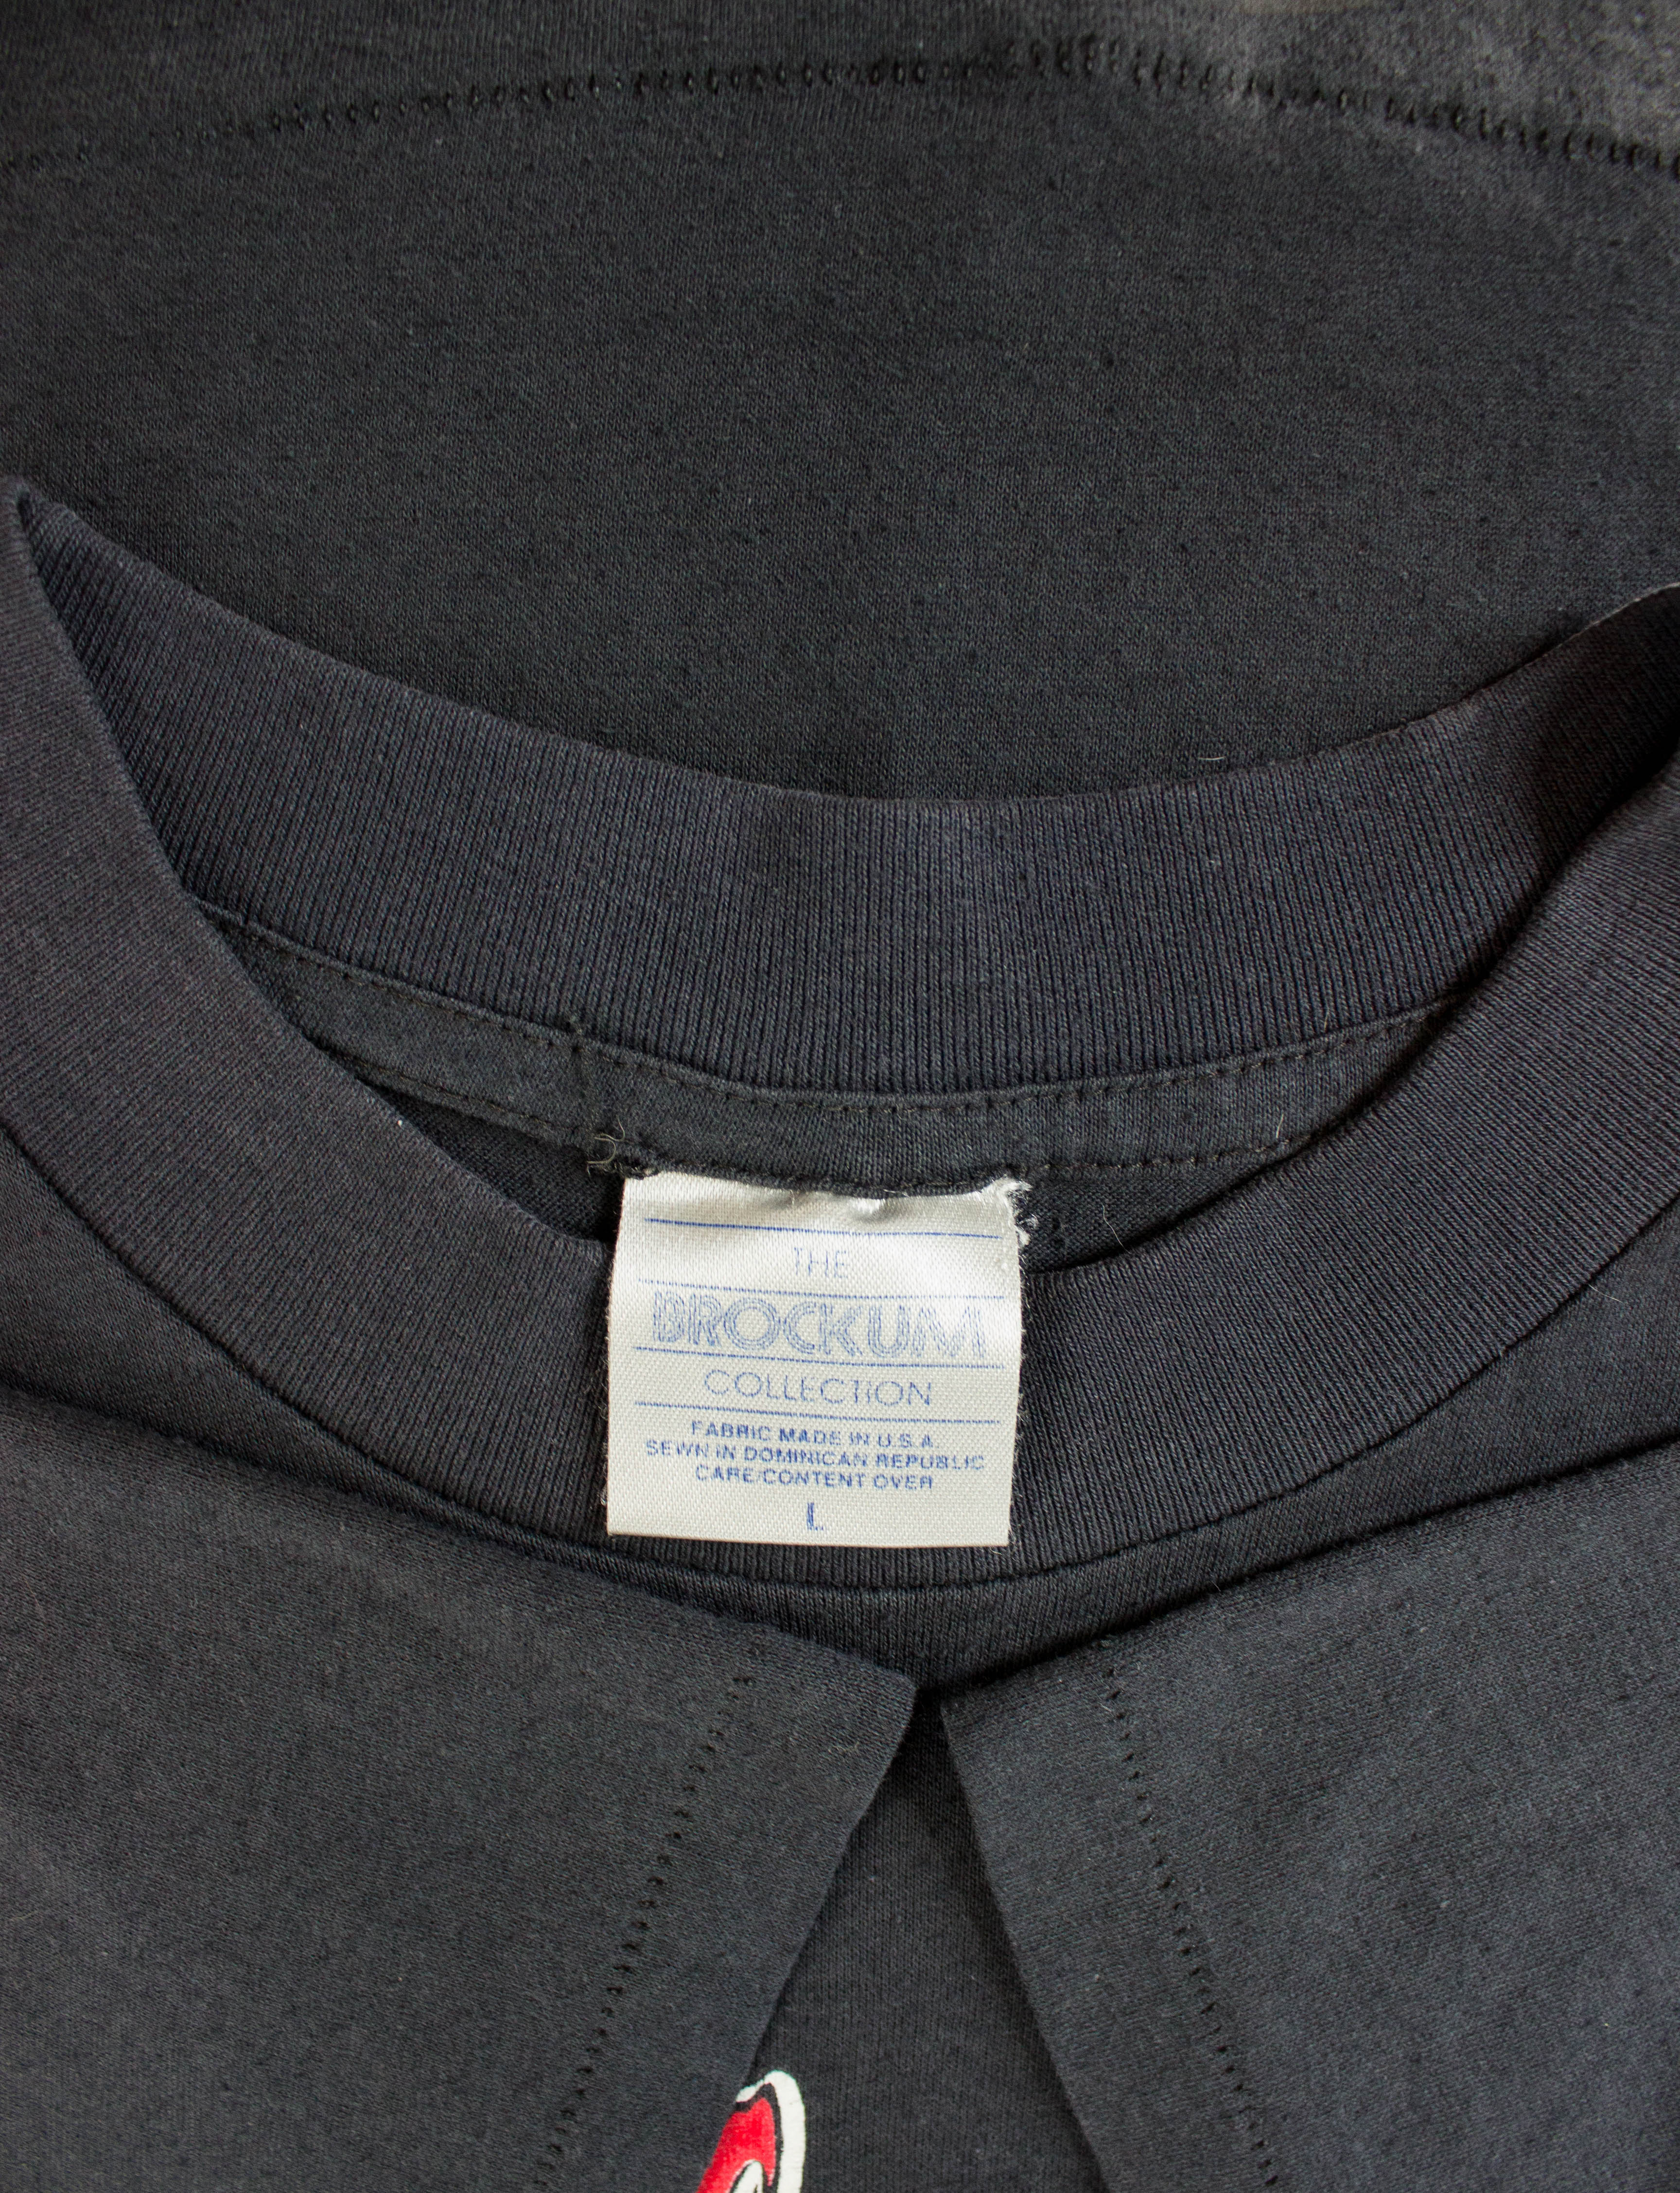 日本製造 BROCKUM USA製 MOTLEY CRUE カスタムヴィンテージTシャツ